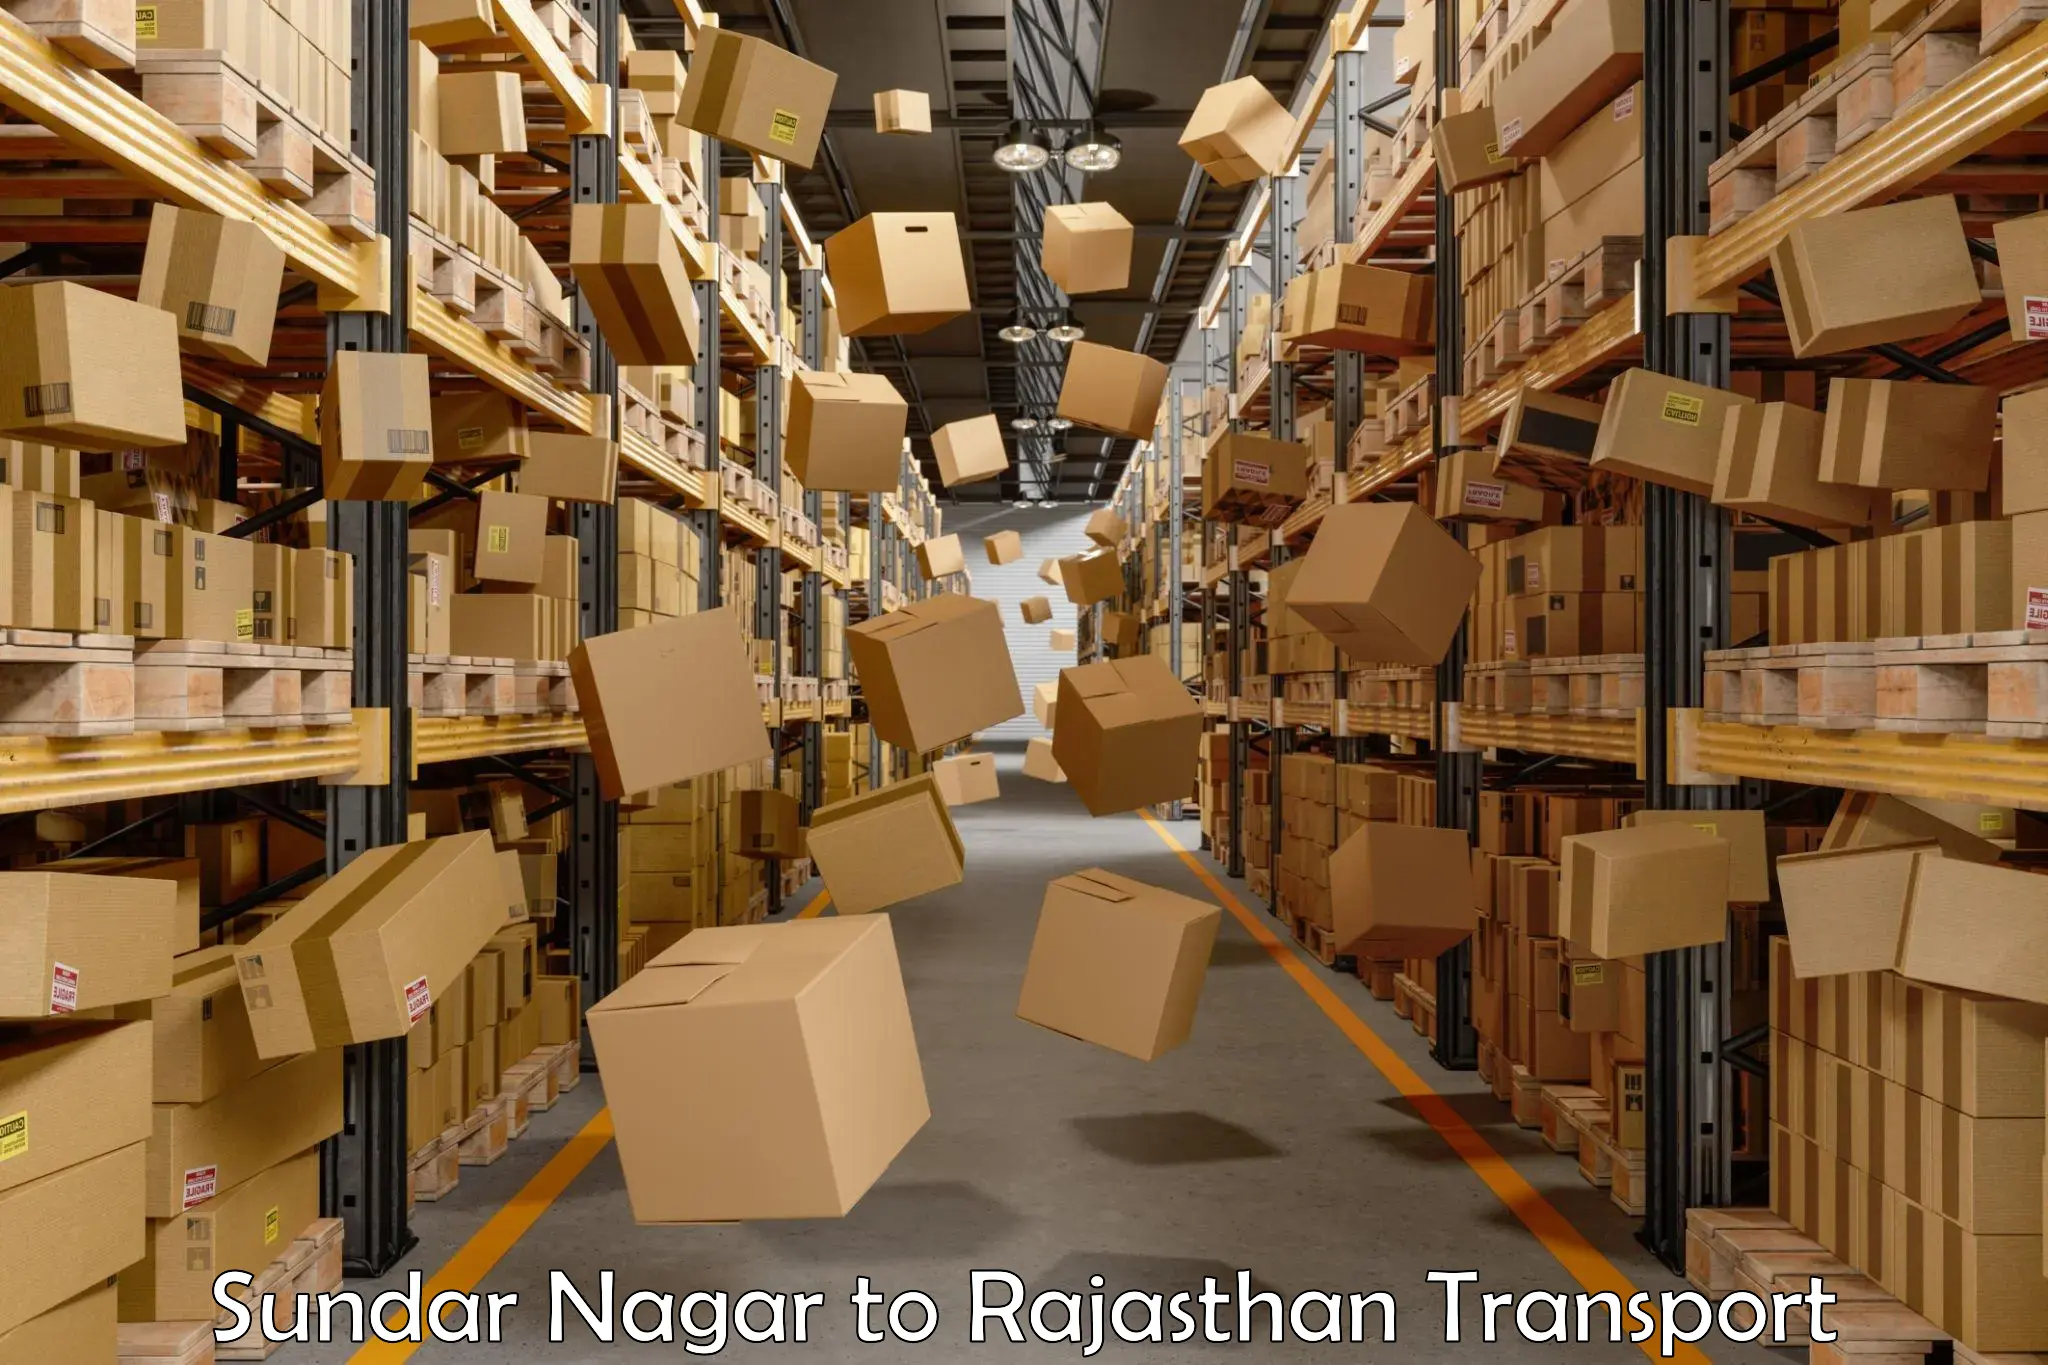 Commercial transport service Sundar Nagar to Nasirabad